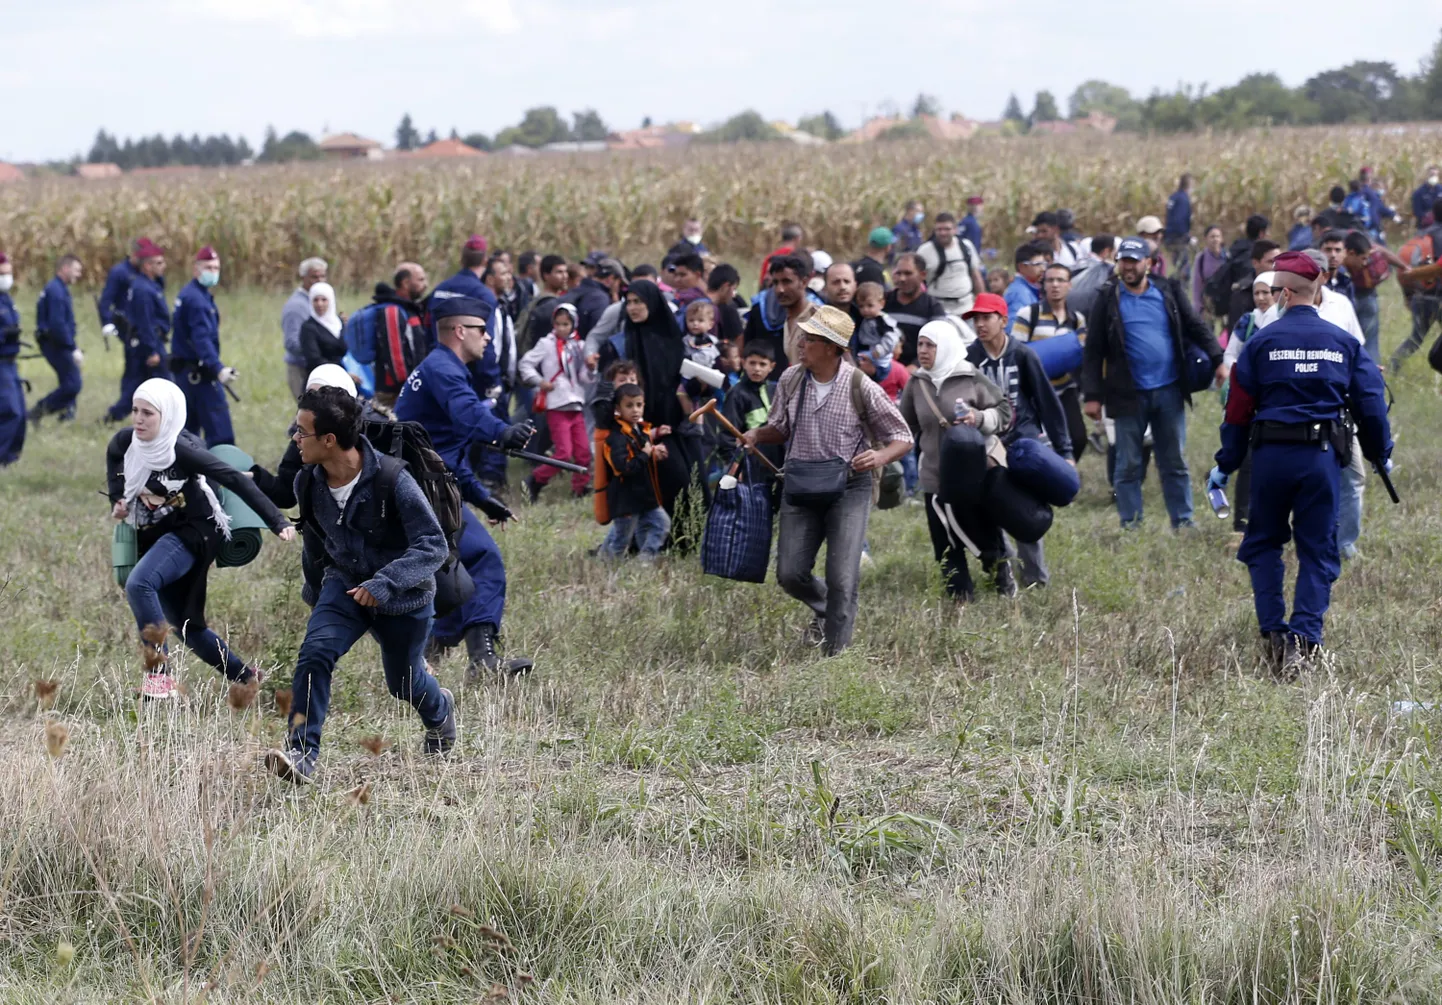 Migrandid Ungari Roszke põgenikekeskuse juures.